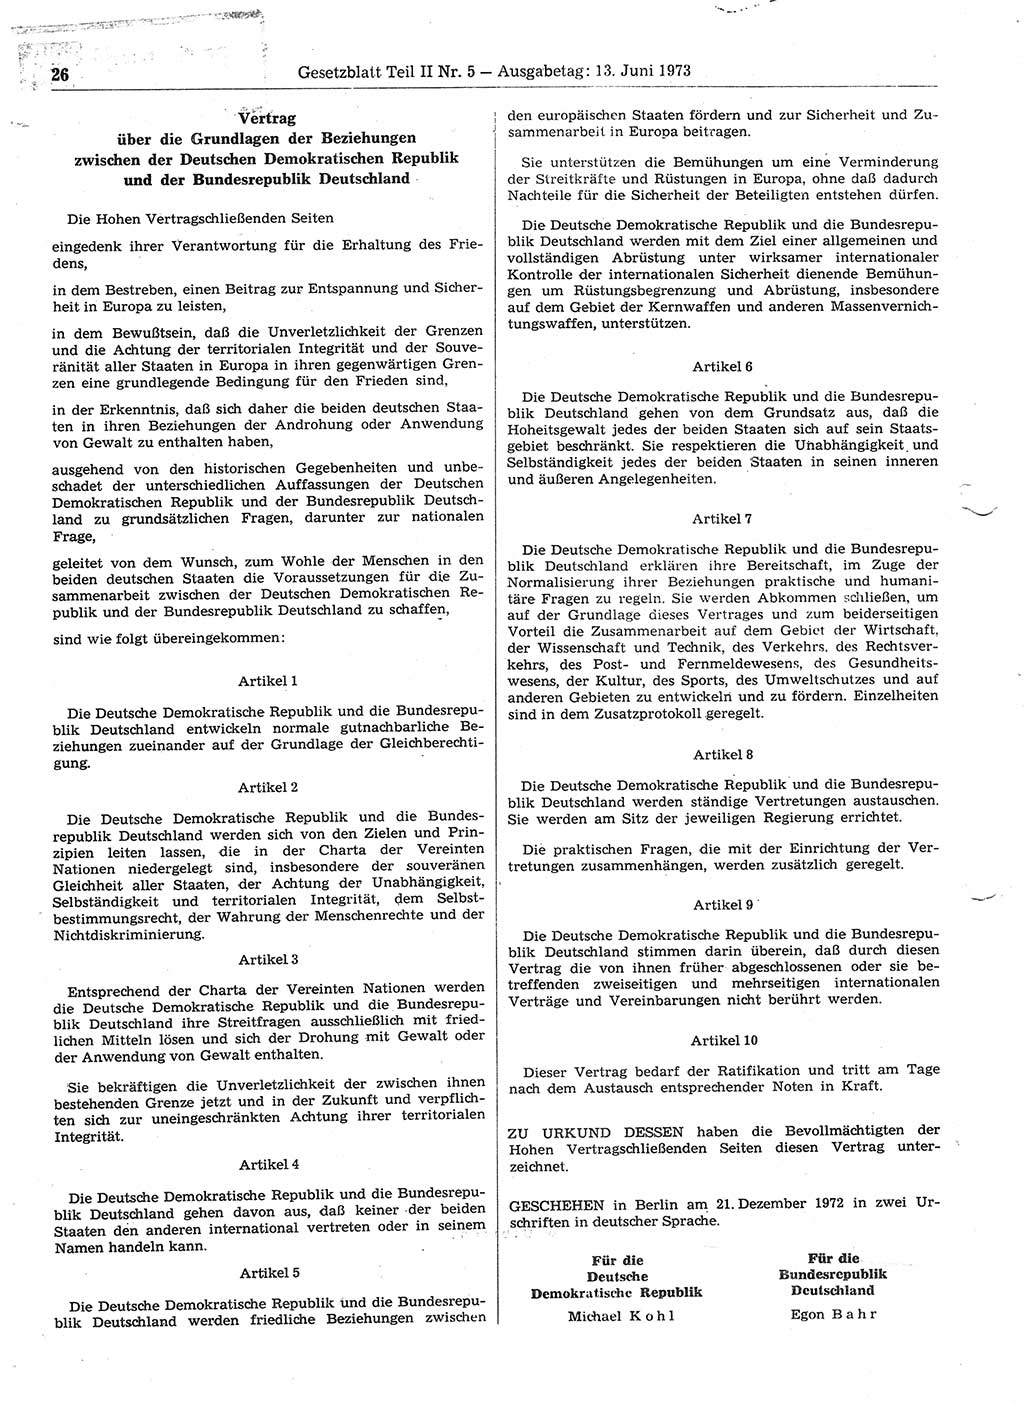 Gesetzblatt (GBl.) der Deutschen Demokratischen Republik (DDR) Teil ⅠⅠ 1973, Seite 26 (GBl. DDR ⅠⅠ 1973, S. 26)